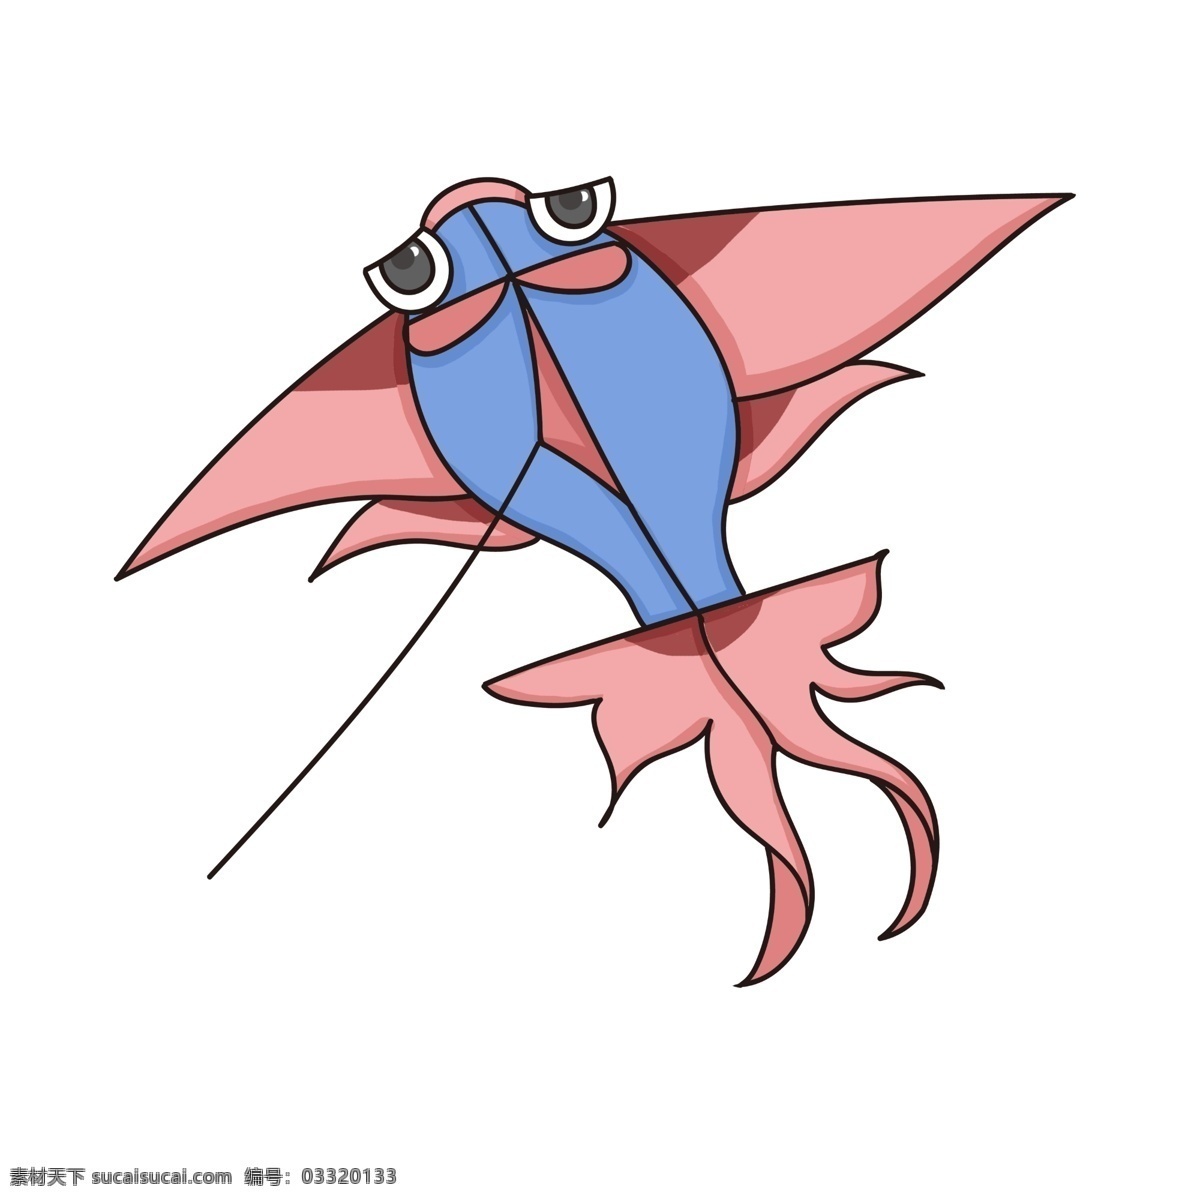 手绘 金鱼 风筝 插画 蓝色的小鱼 卡通插画 手绘风筝插画 大大的眼睛 粉色的鱼鳍 漂亮的风筝